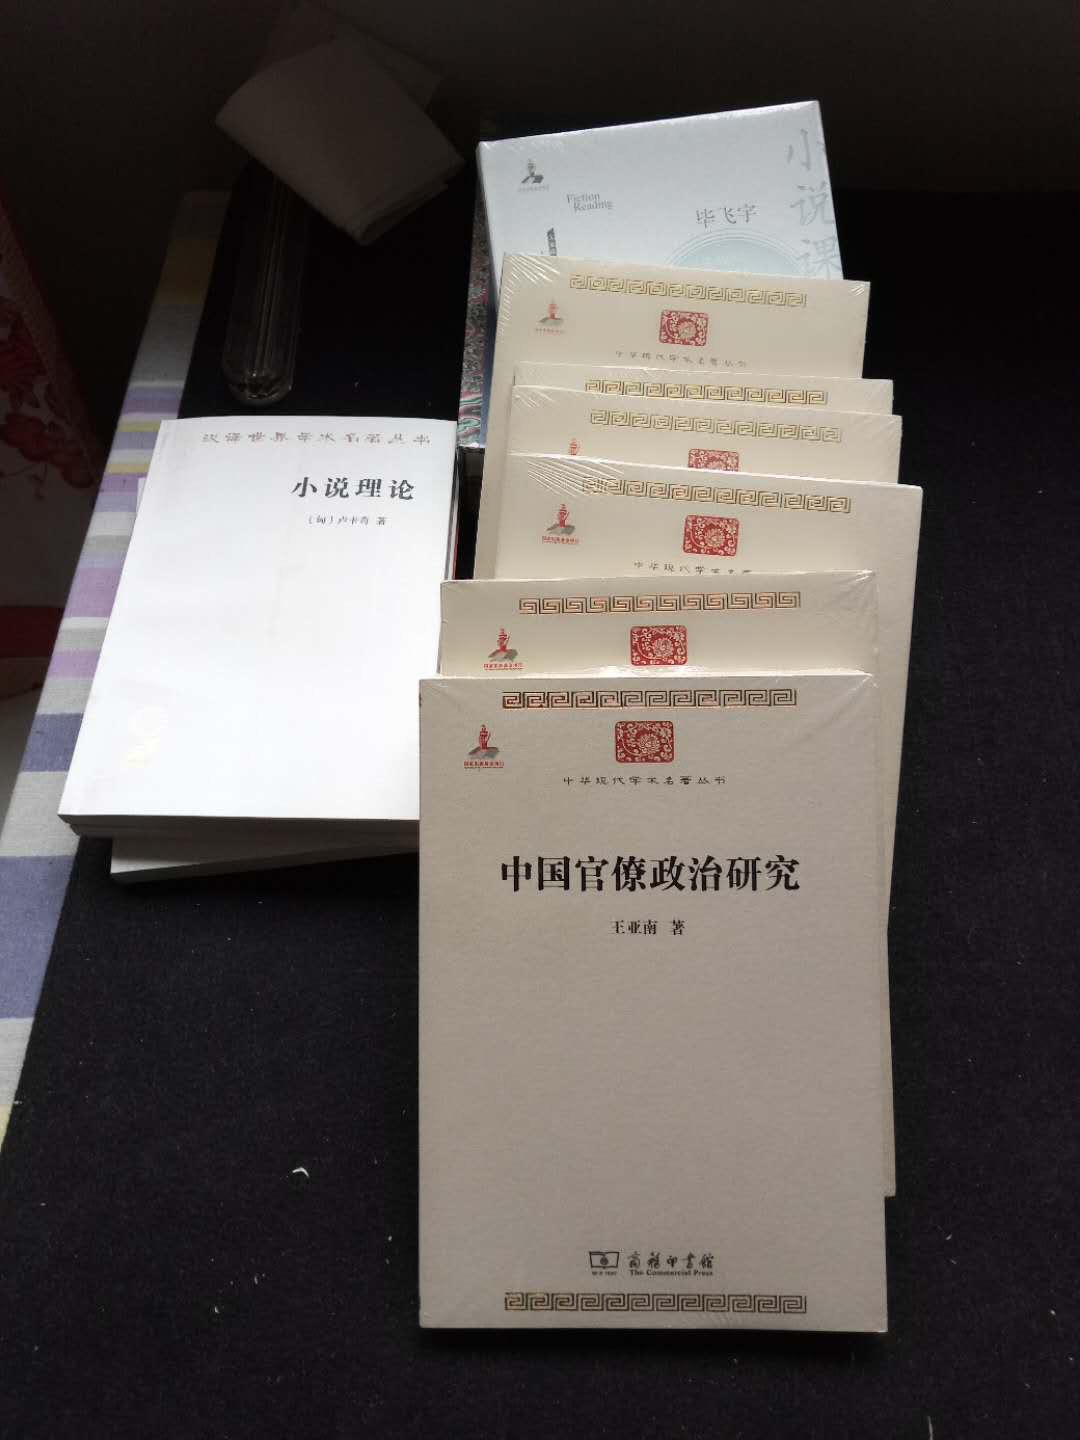 中华现代学术名著丛书，每一本都是经典，每一本都值得购买，趁着双十一做活动，买了这个系列的很多书，特别划算！推荐大家购买！